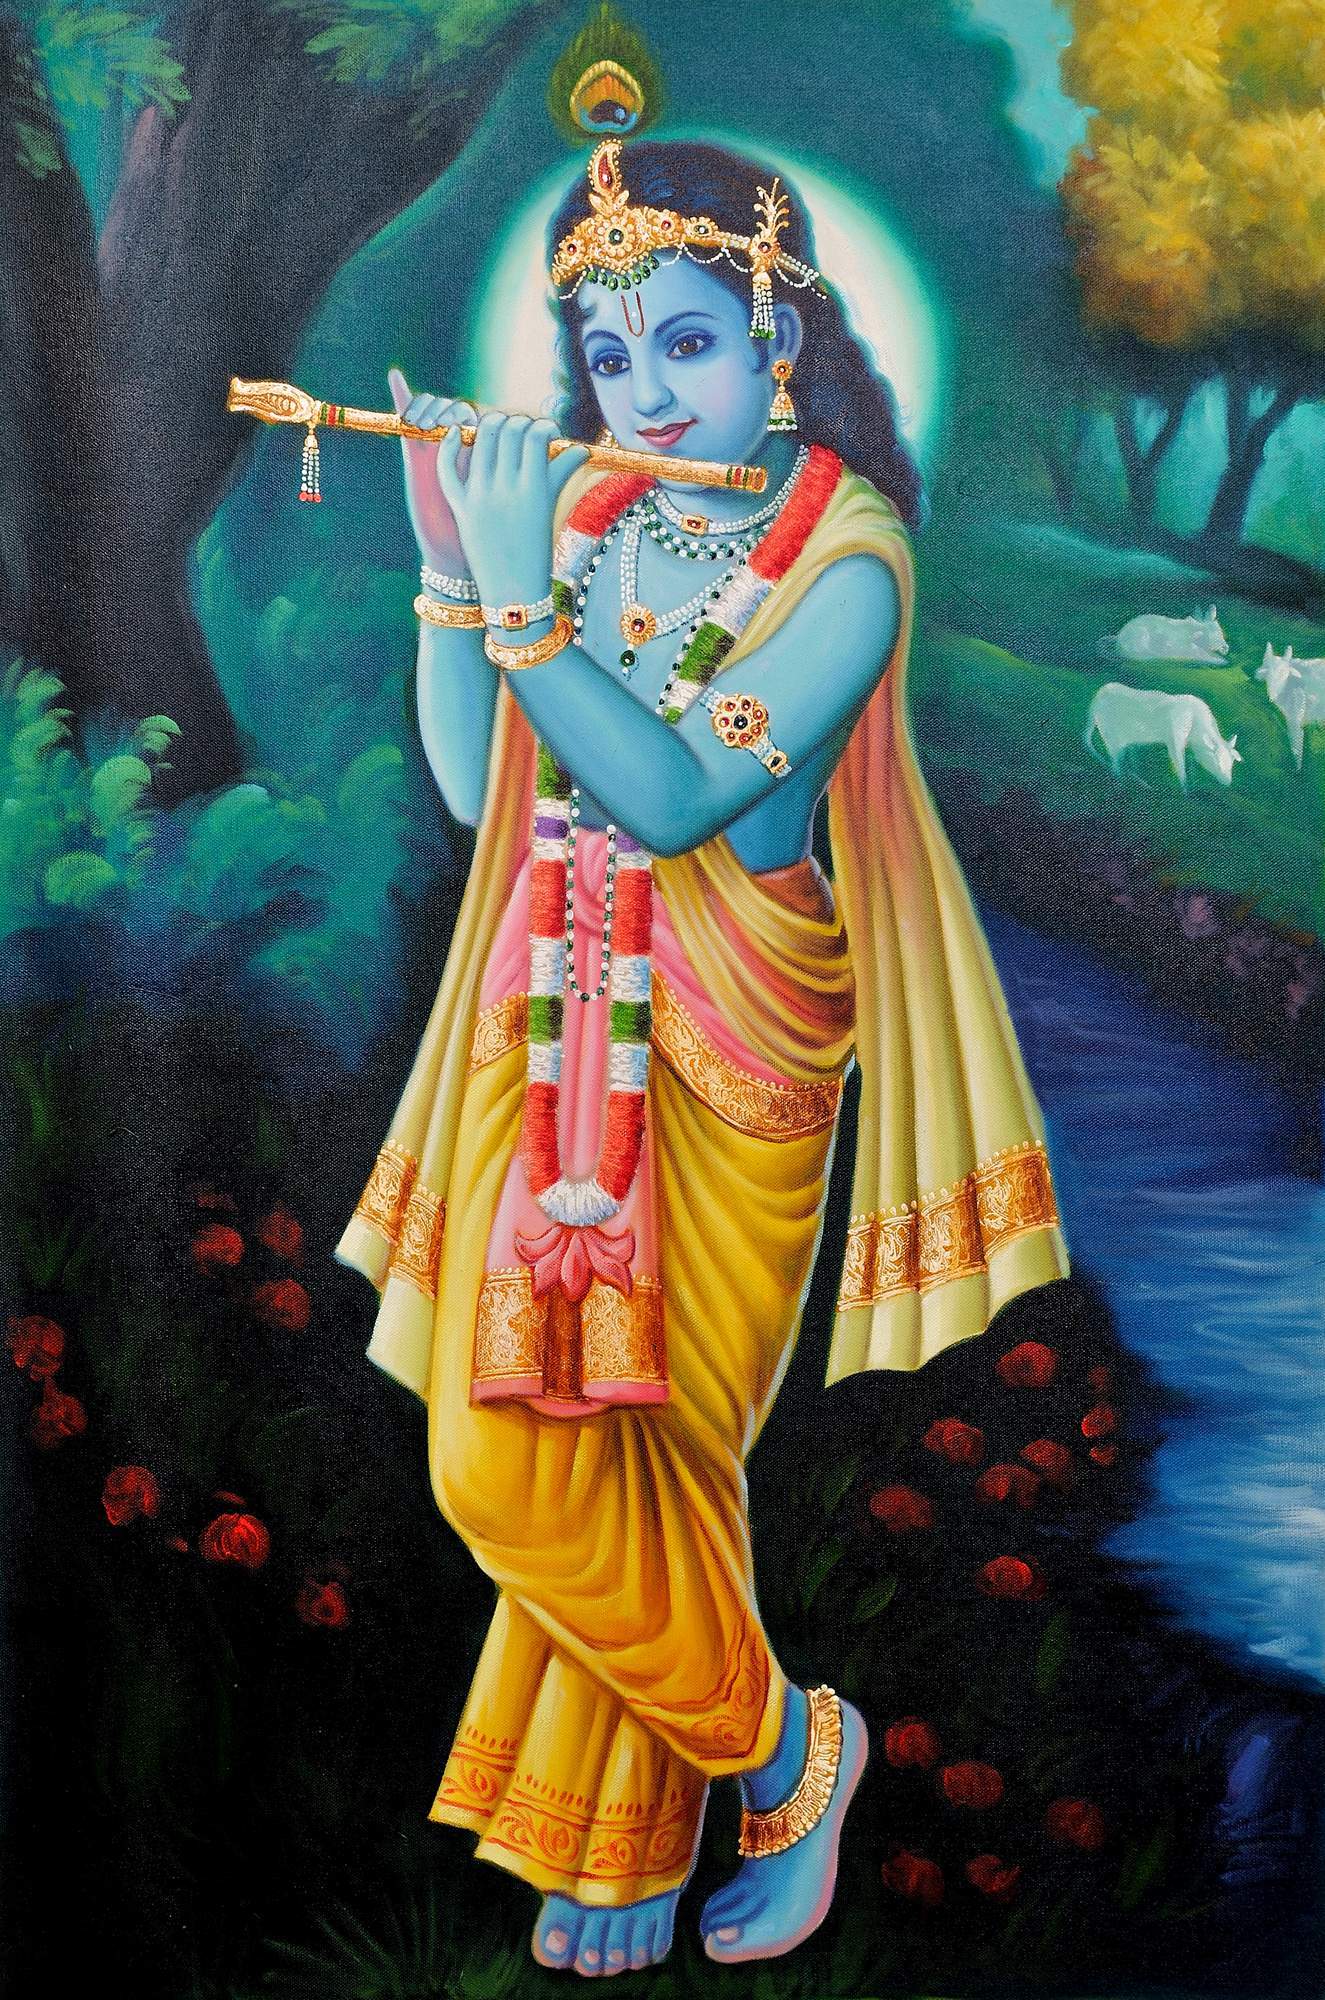 Yogic lessons. Krishna's flute